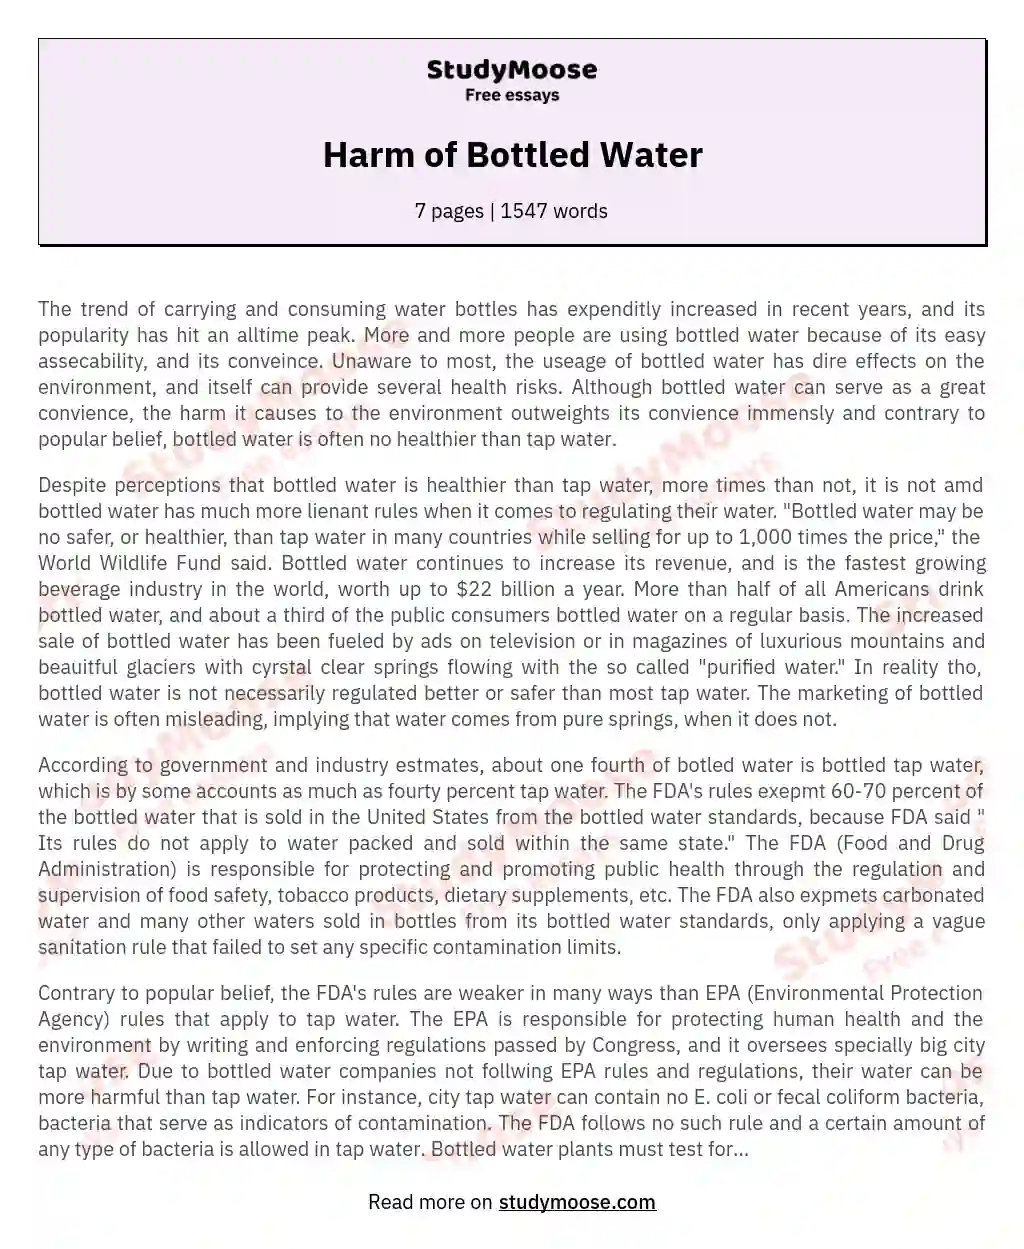 Harm of Bottled Water